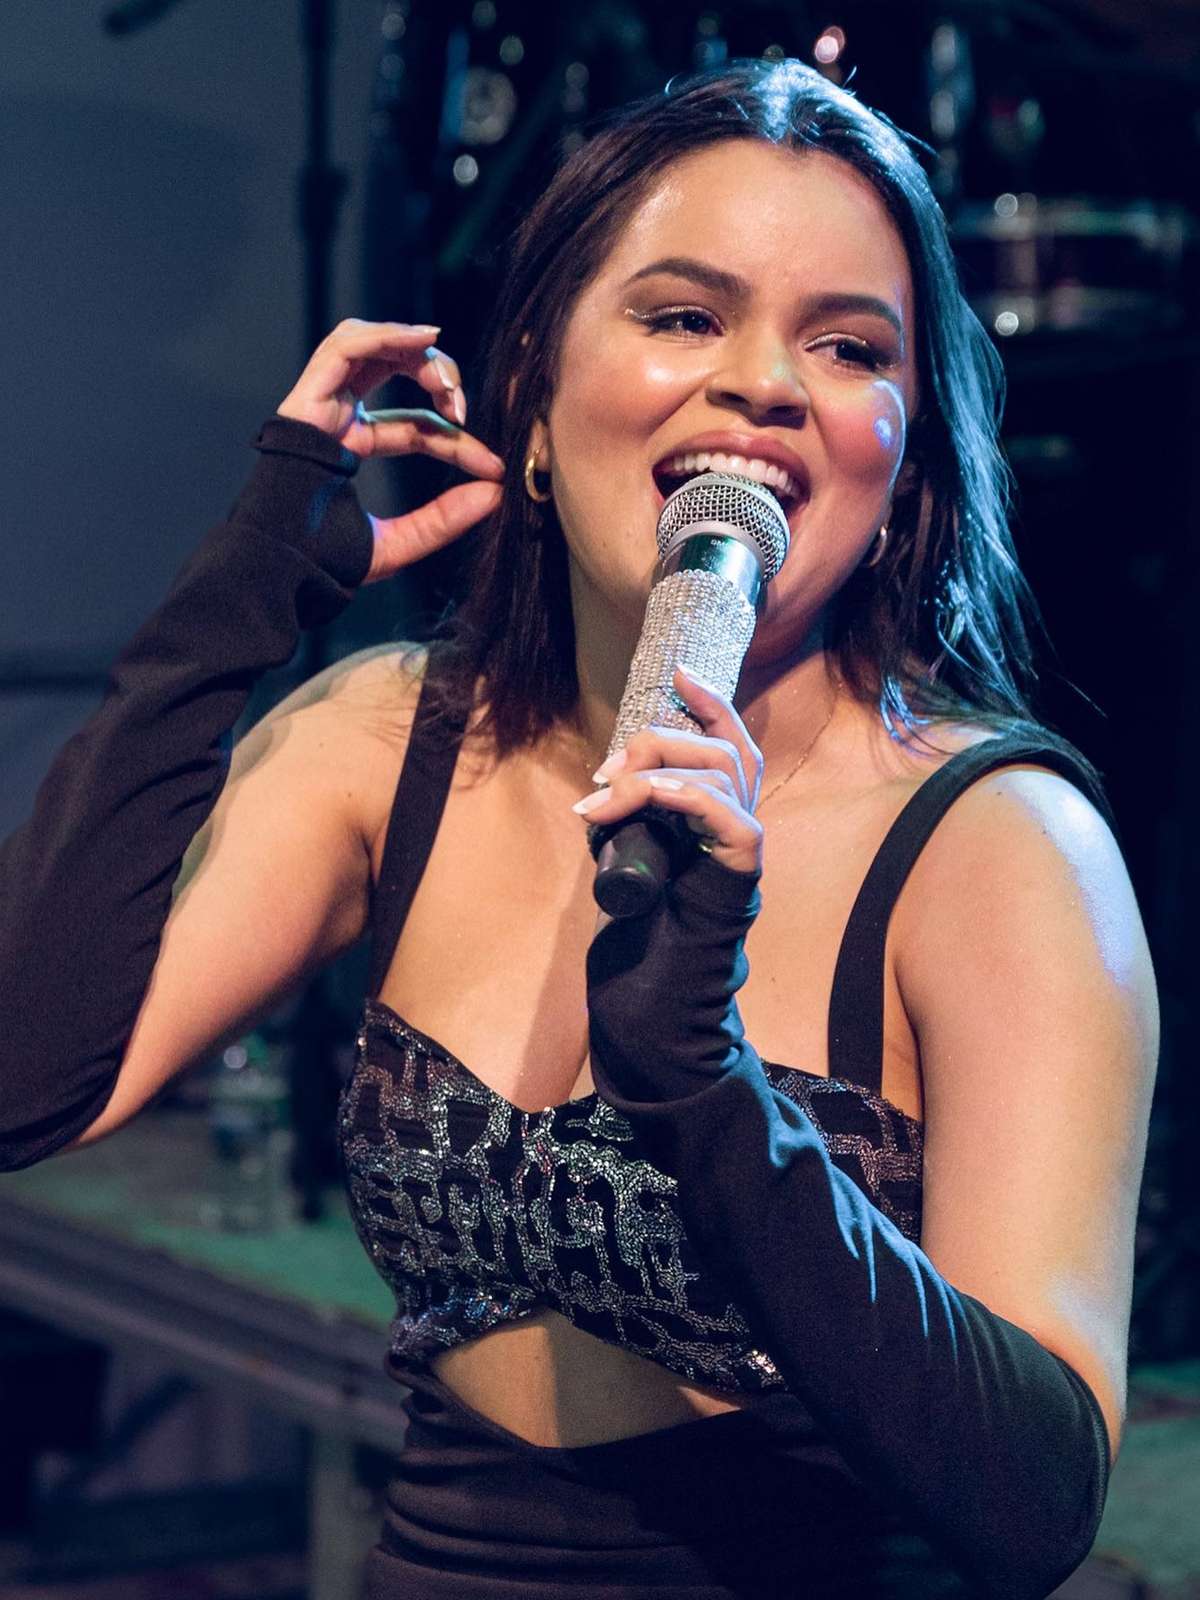 Danieze Santiago lança novo EP completamente escrito pela cantora